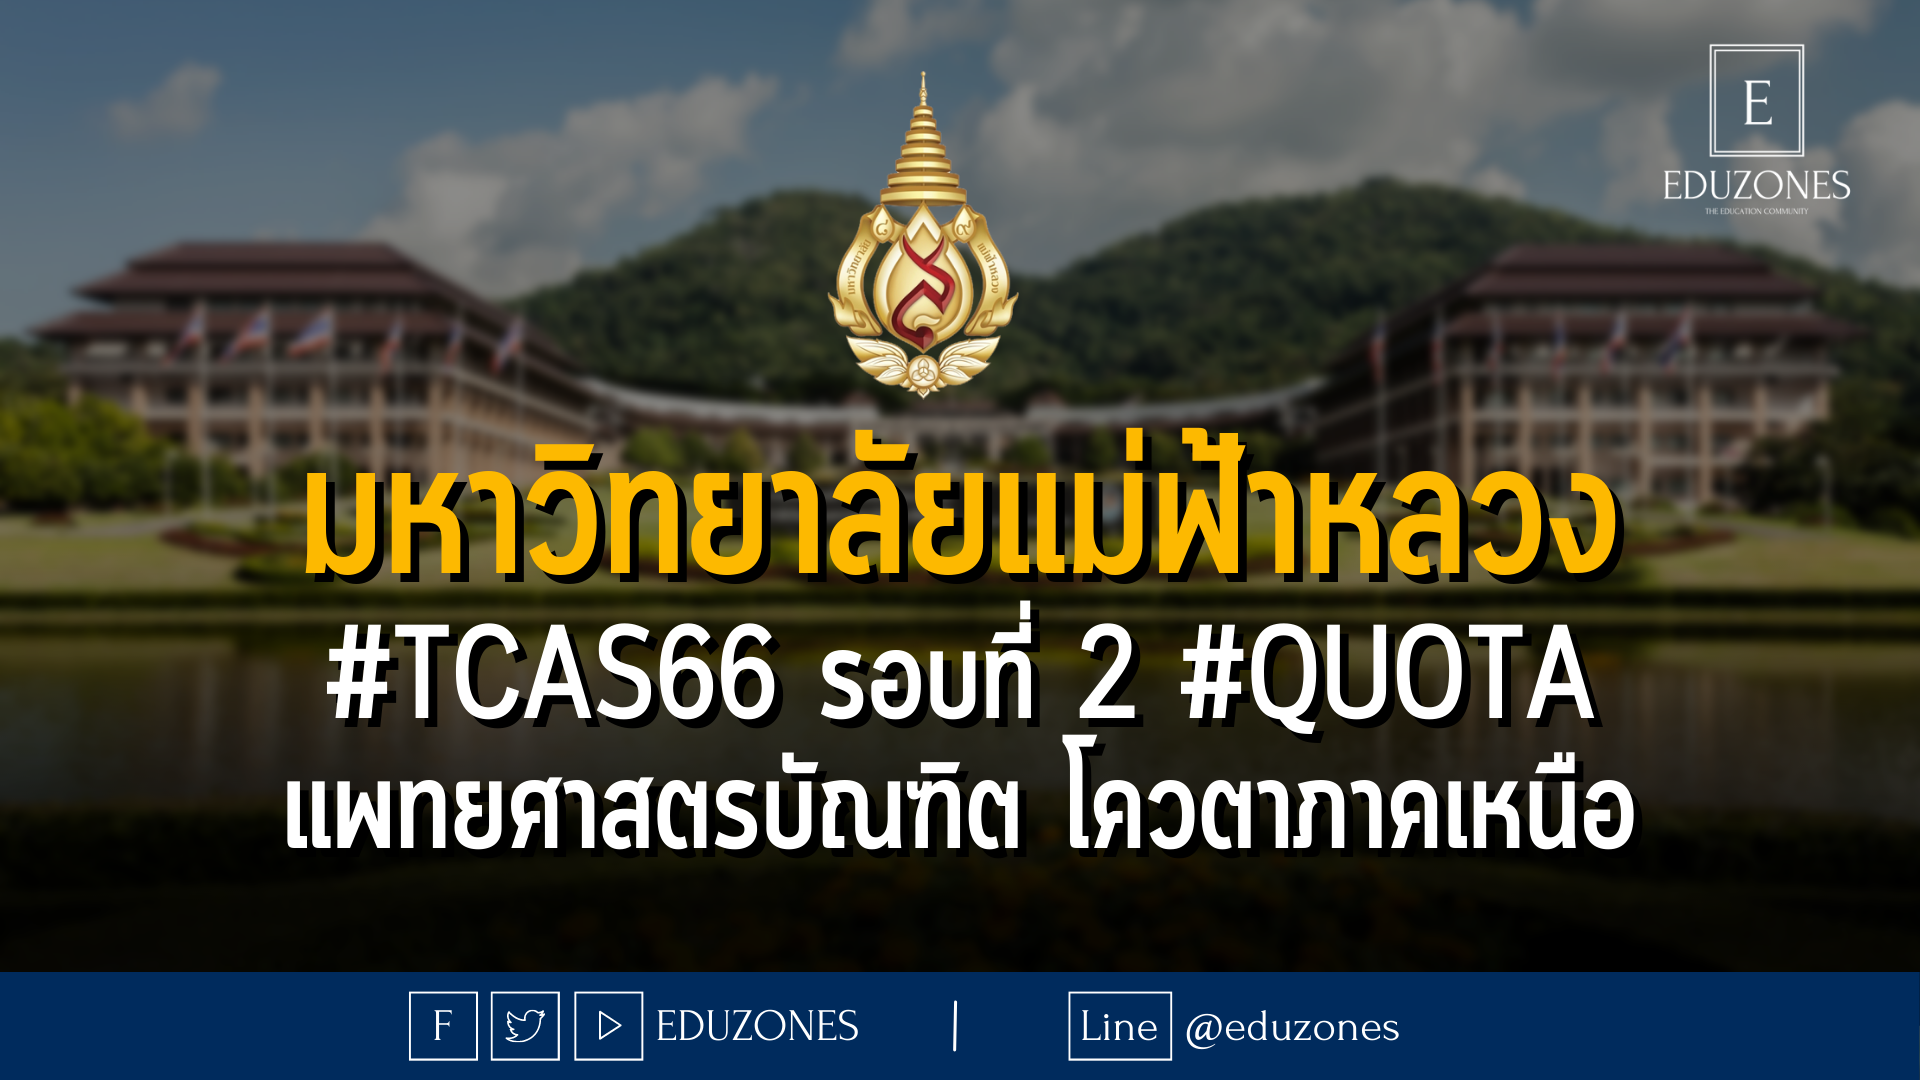 มหาวิทยาลัยแม่ฟ้าหลวง #TCAS66 รอบที่ 2 #quota แพทยศาสตรบัณฑิต โควตาภาคเหนือ - 13 กุมภาพันธ์ - 31 มีนาคม 2566 